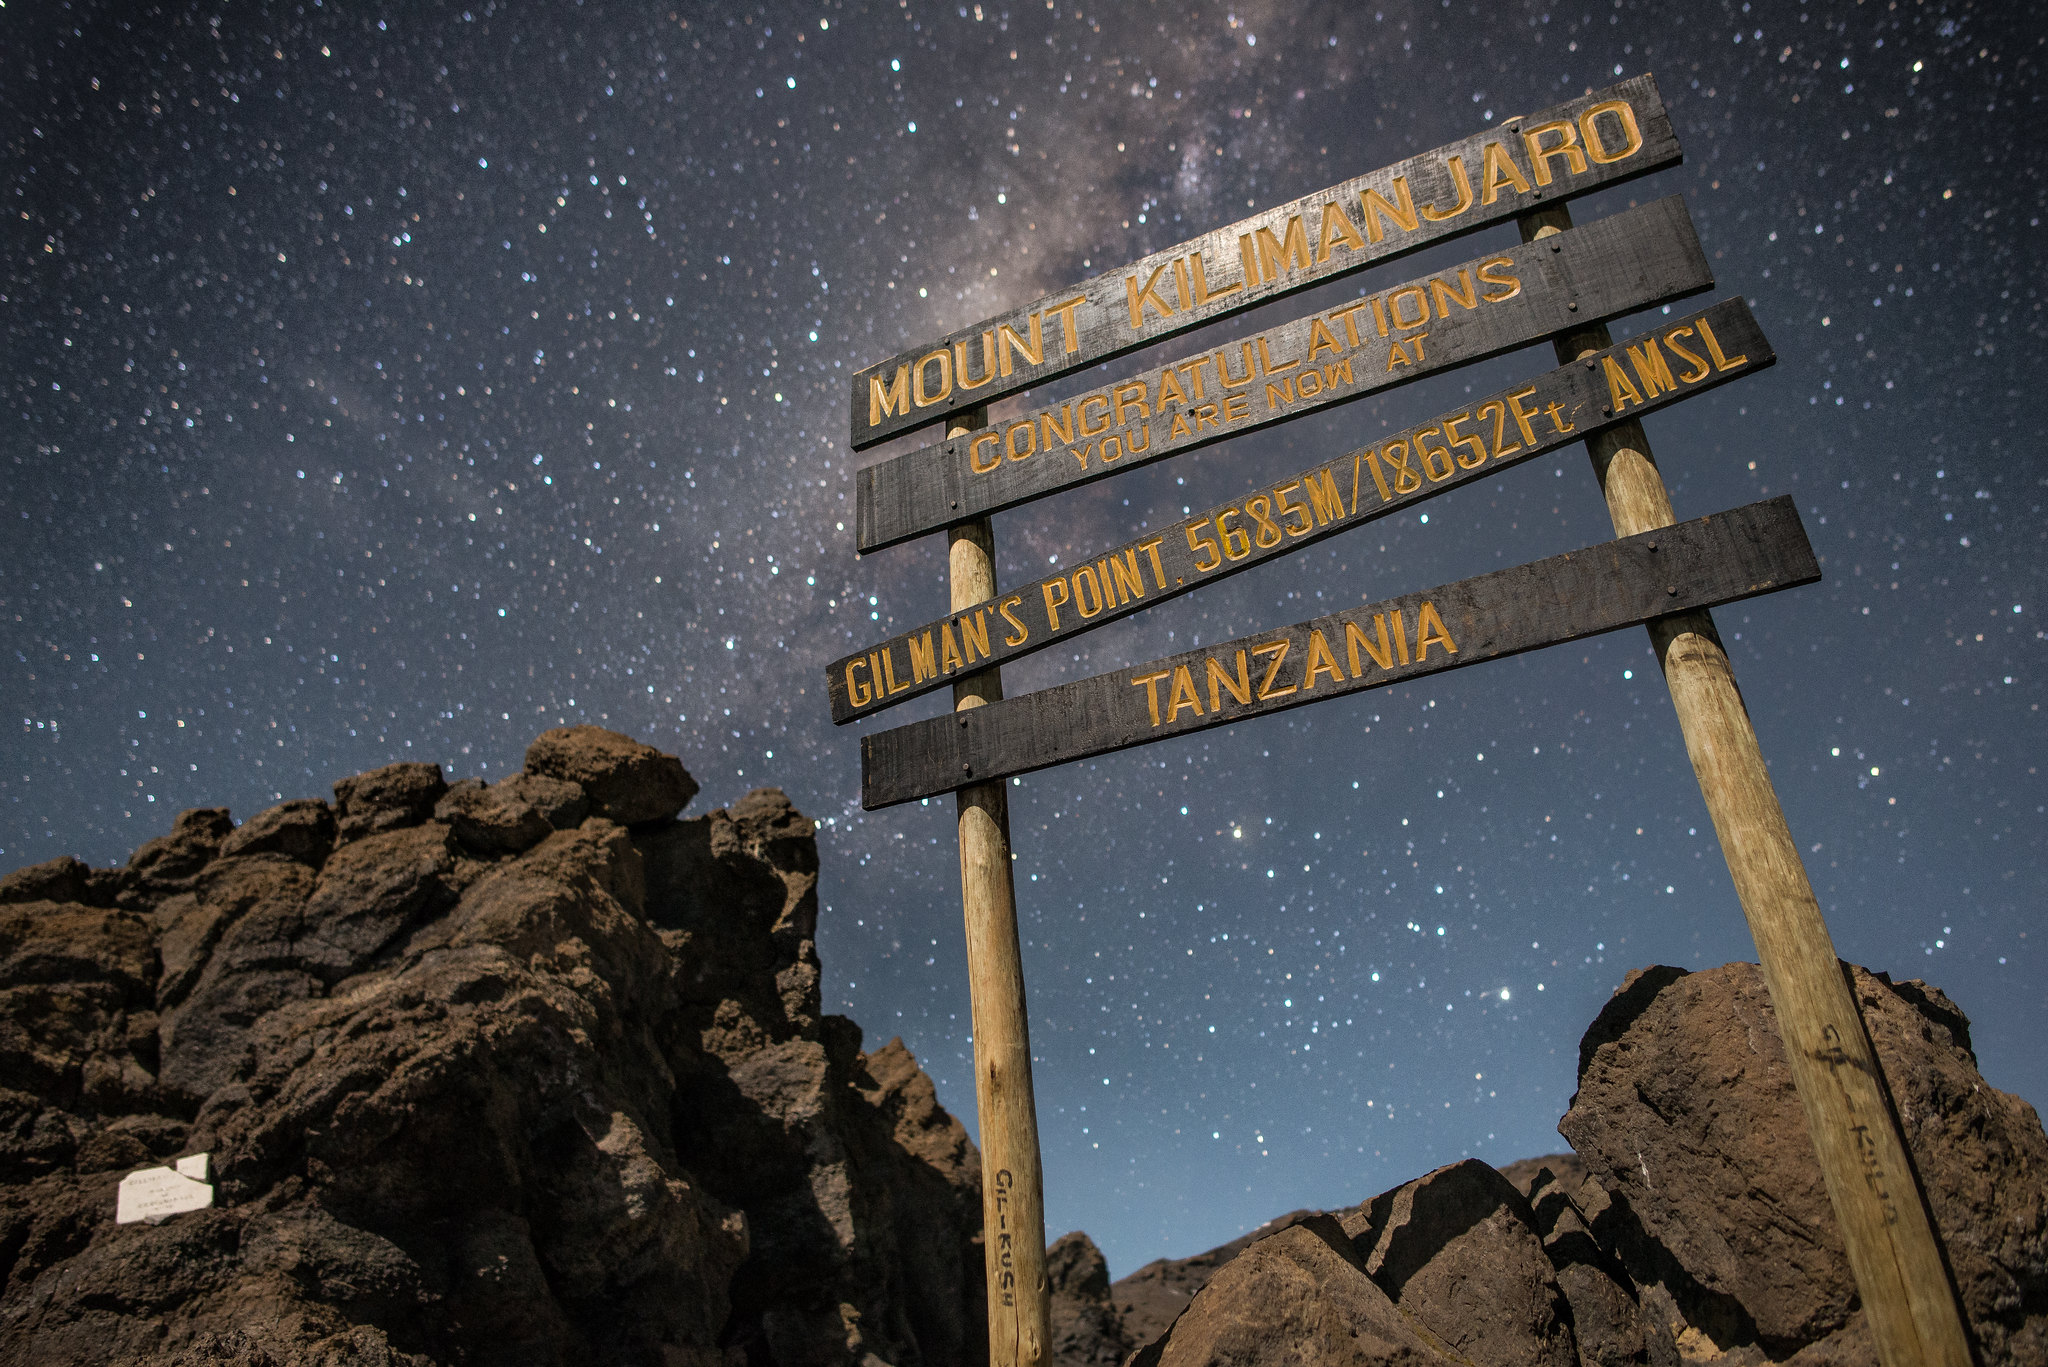 Gilman’s Point, Mount Kilimanjaro summit point